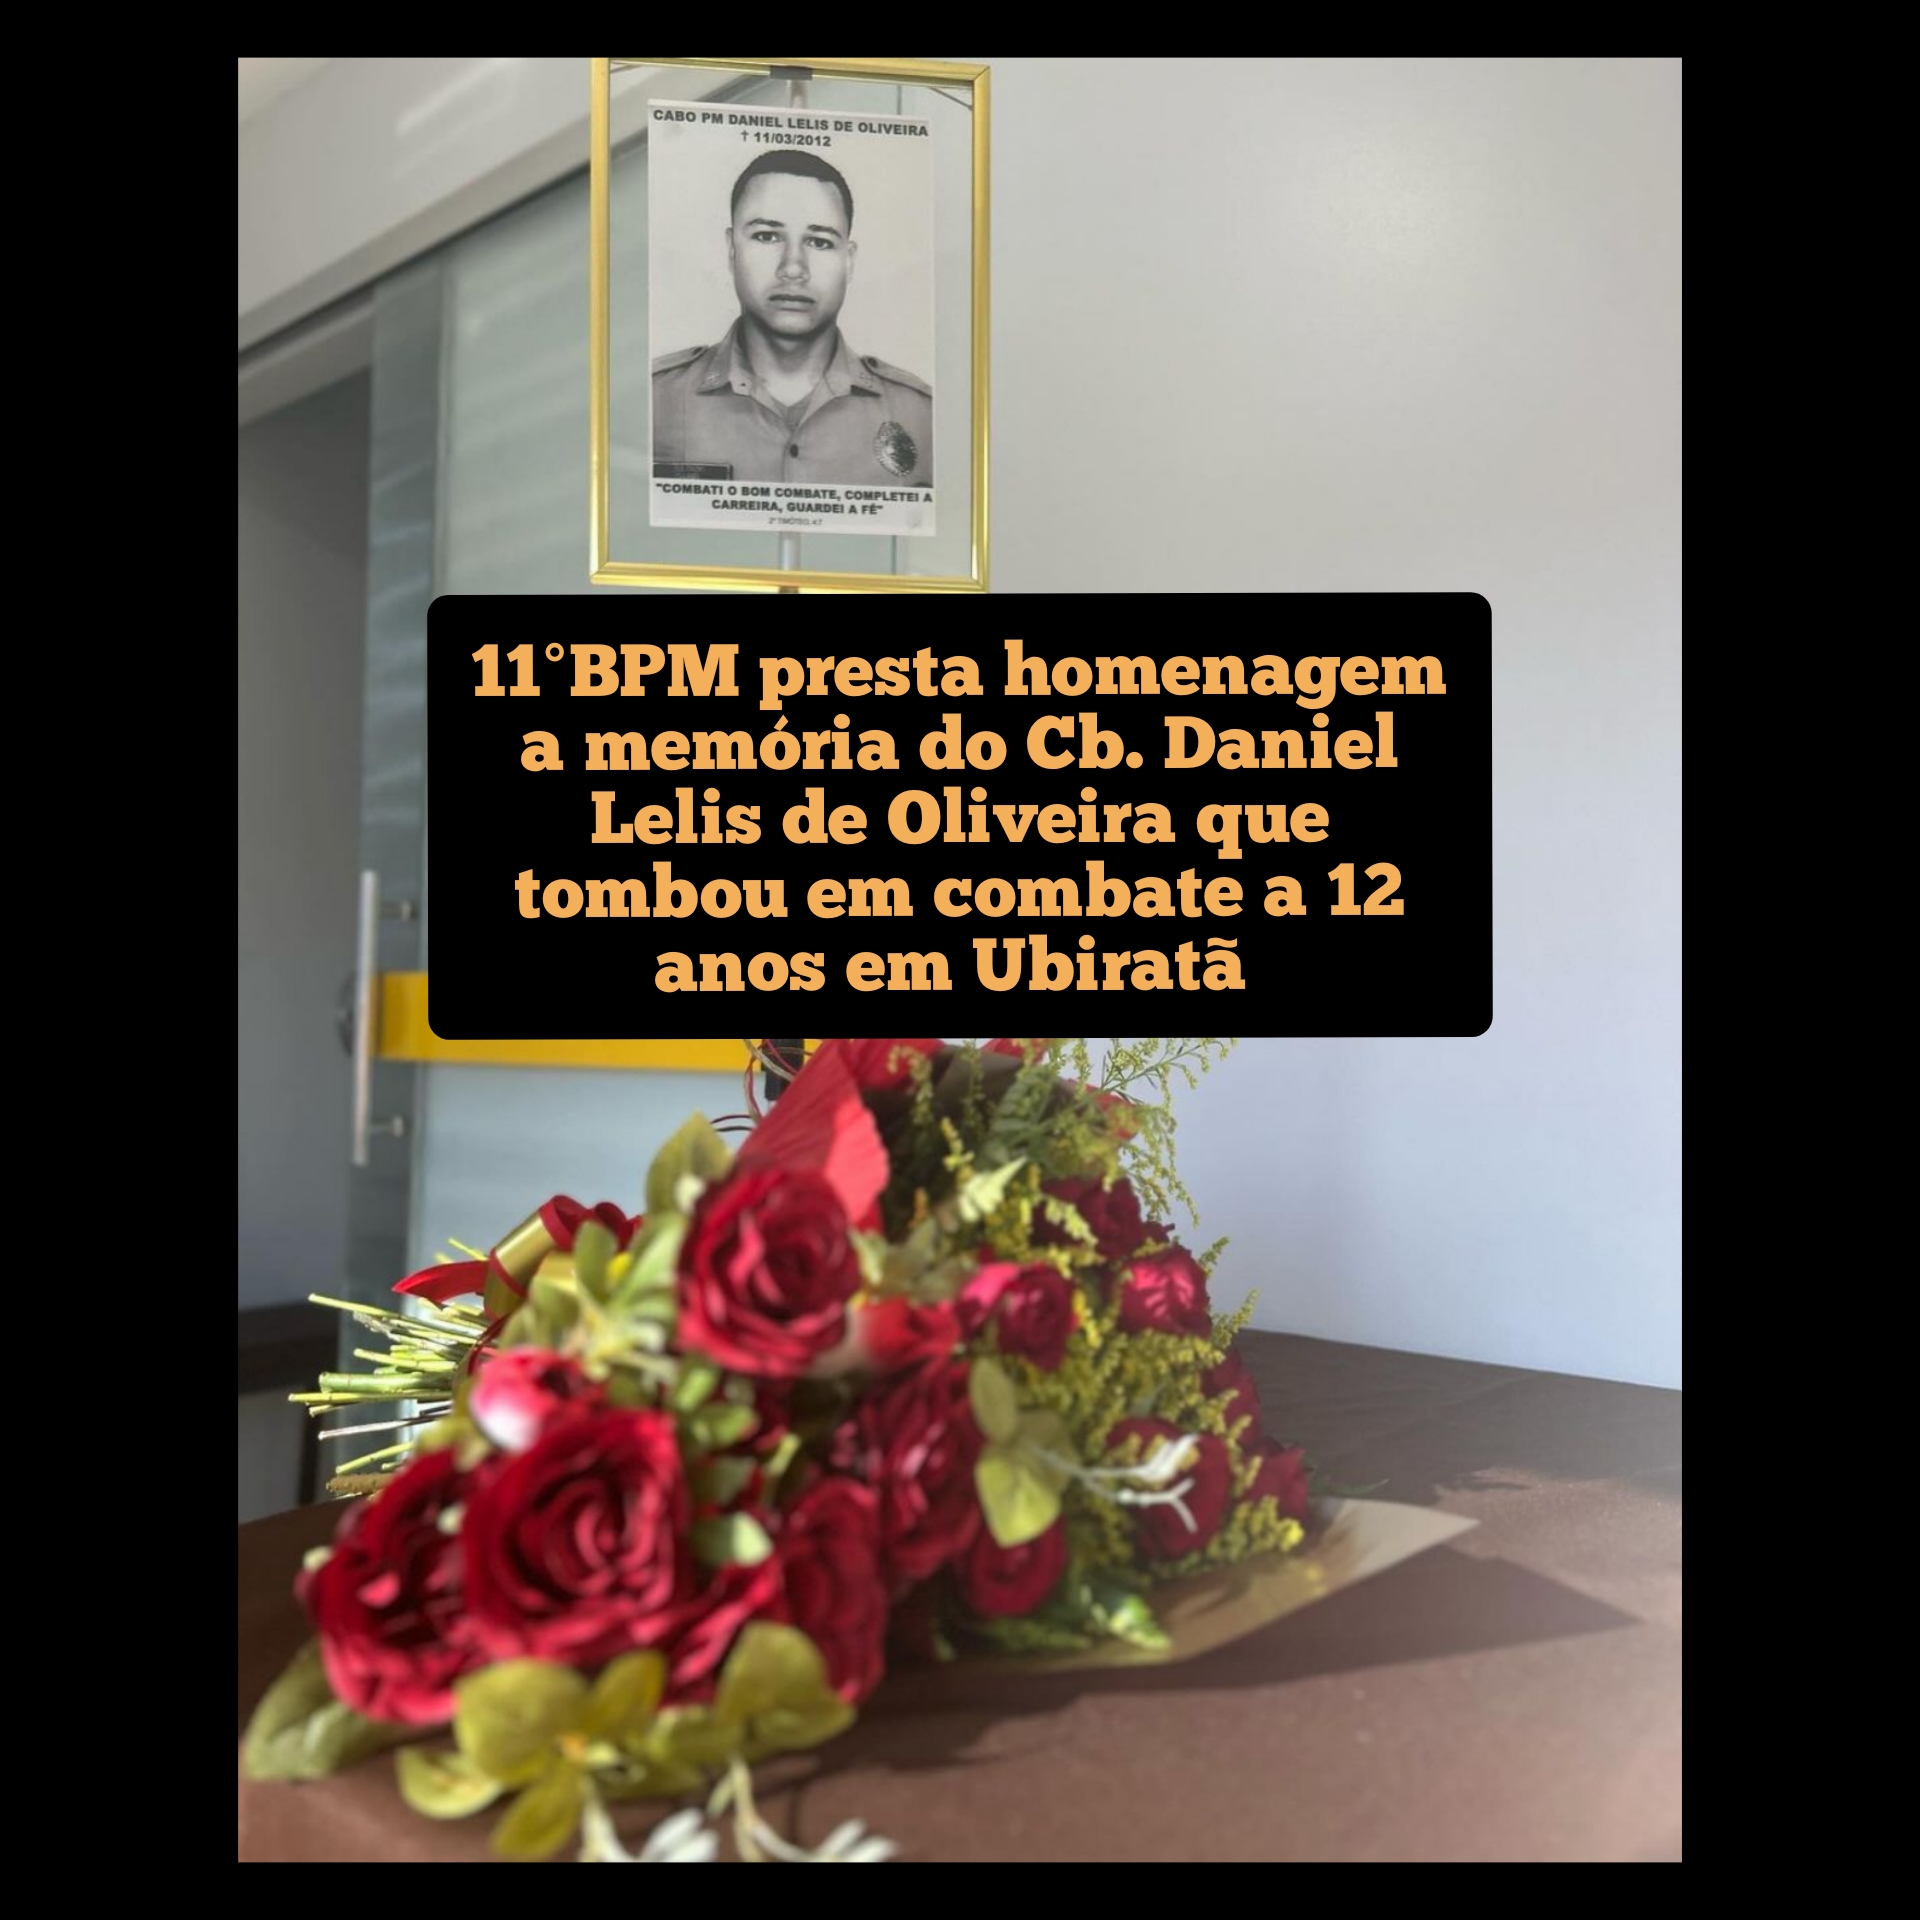 11º BPM presta homenagem a memória do Cb. Daniel Lelis de Oliveira que tombou morto em combate a 12 anos em Ubiratã